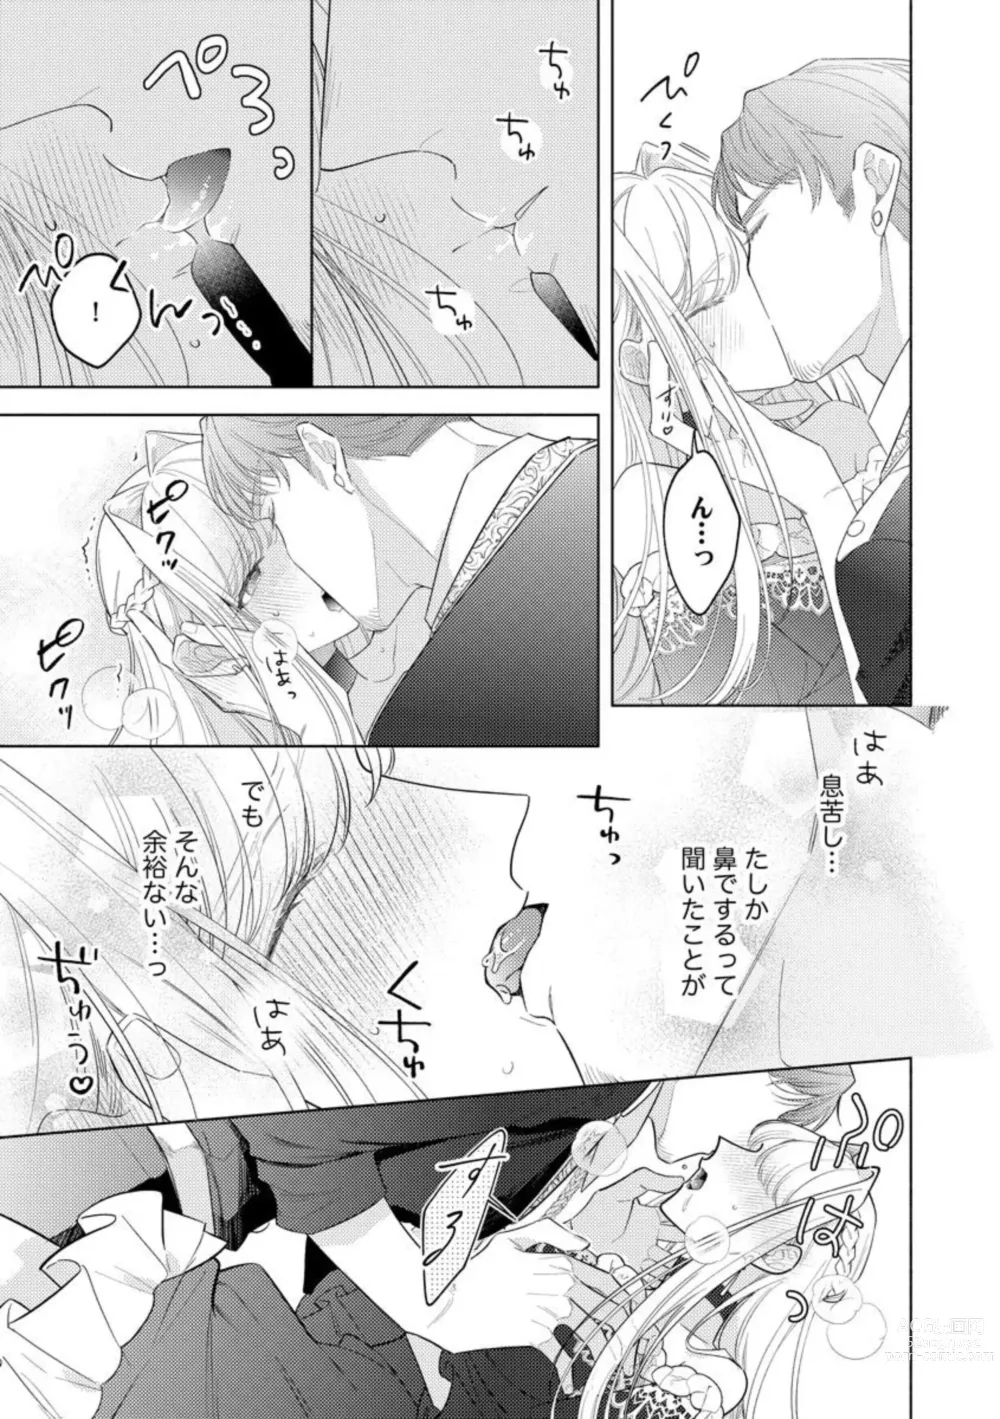 Page 19 of manga Haikei Ojisama-ō Otōto Denka, ichiya Kagiri no Hazu ga Konyaku no Mōshikomi wa Sōteigaidesu!